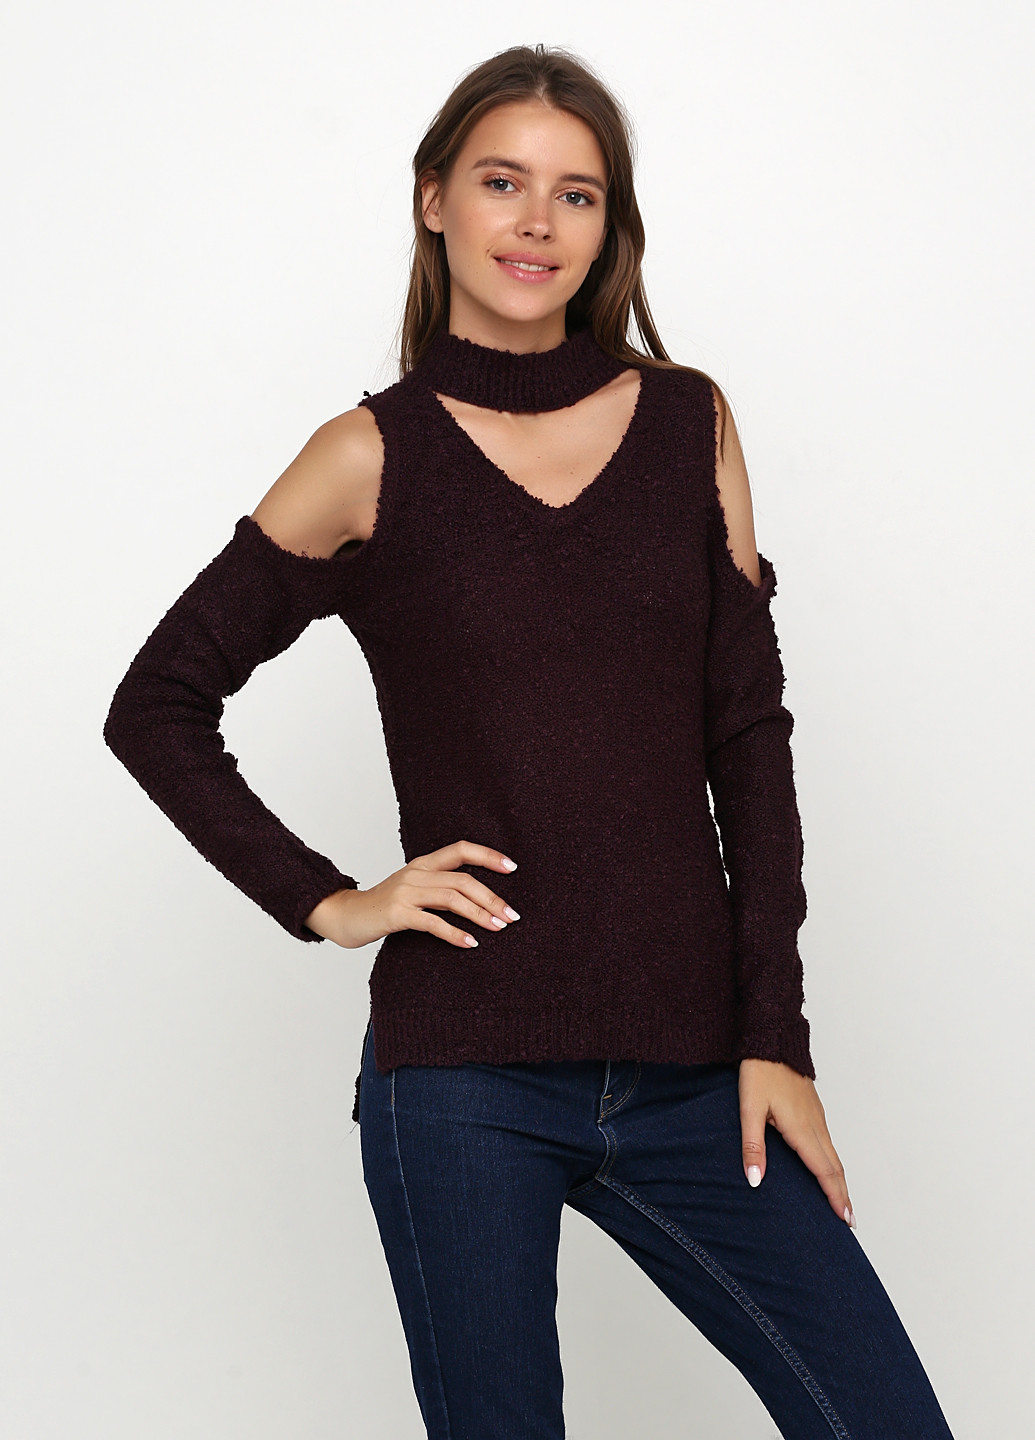 Бордовый демисезонный пуловер пуловер Alya by Francesca`s